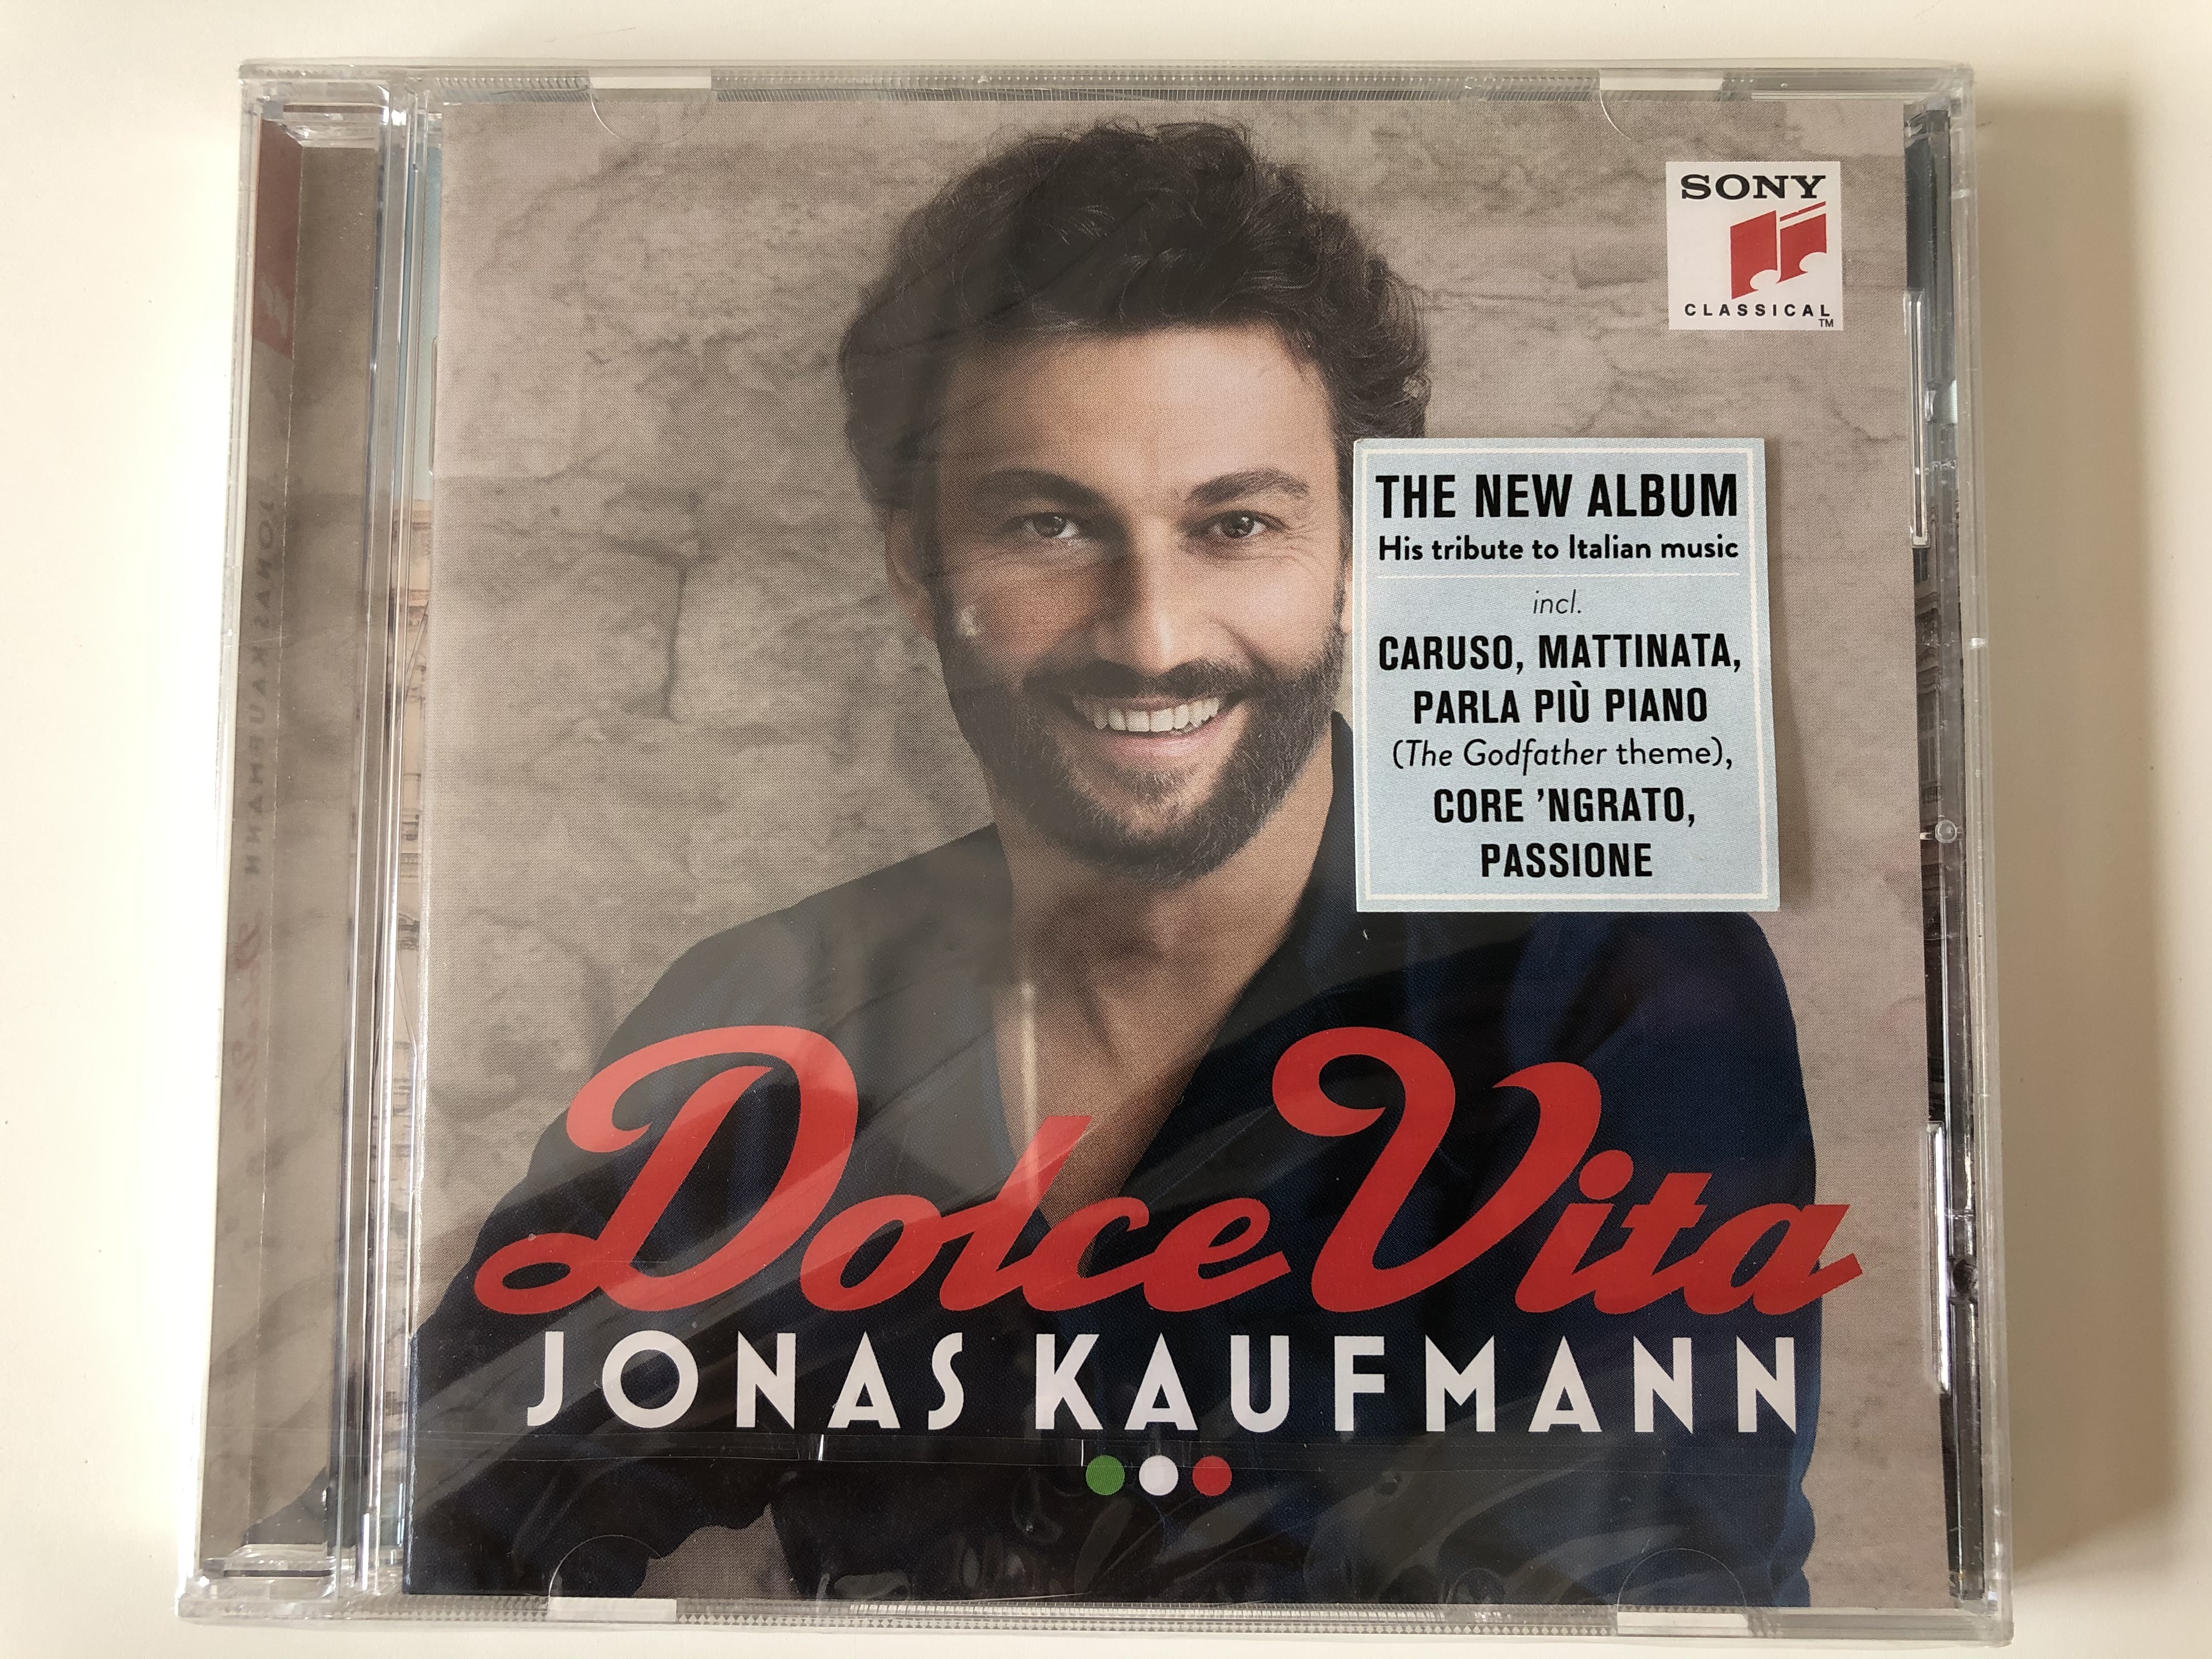 dolce-vita-jonas-kaufmann-the-new-album-his-tribute-to-italian-music-icnl.-caruso-mattinata-parla-piu-piano-the-godfather-theme-core-ngrato-passione-sony-classical-audio-cd-2016-88-1-.jpg